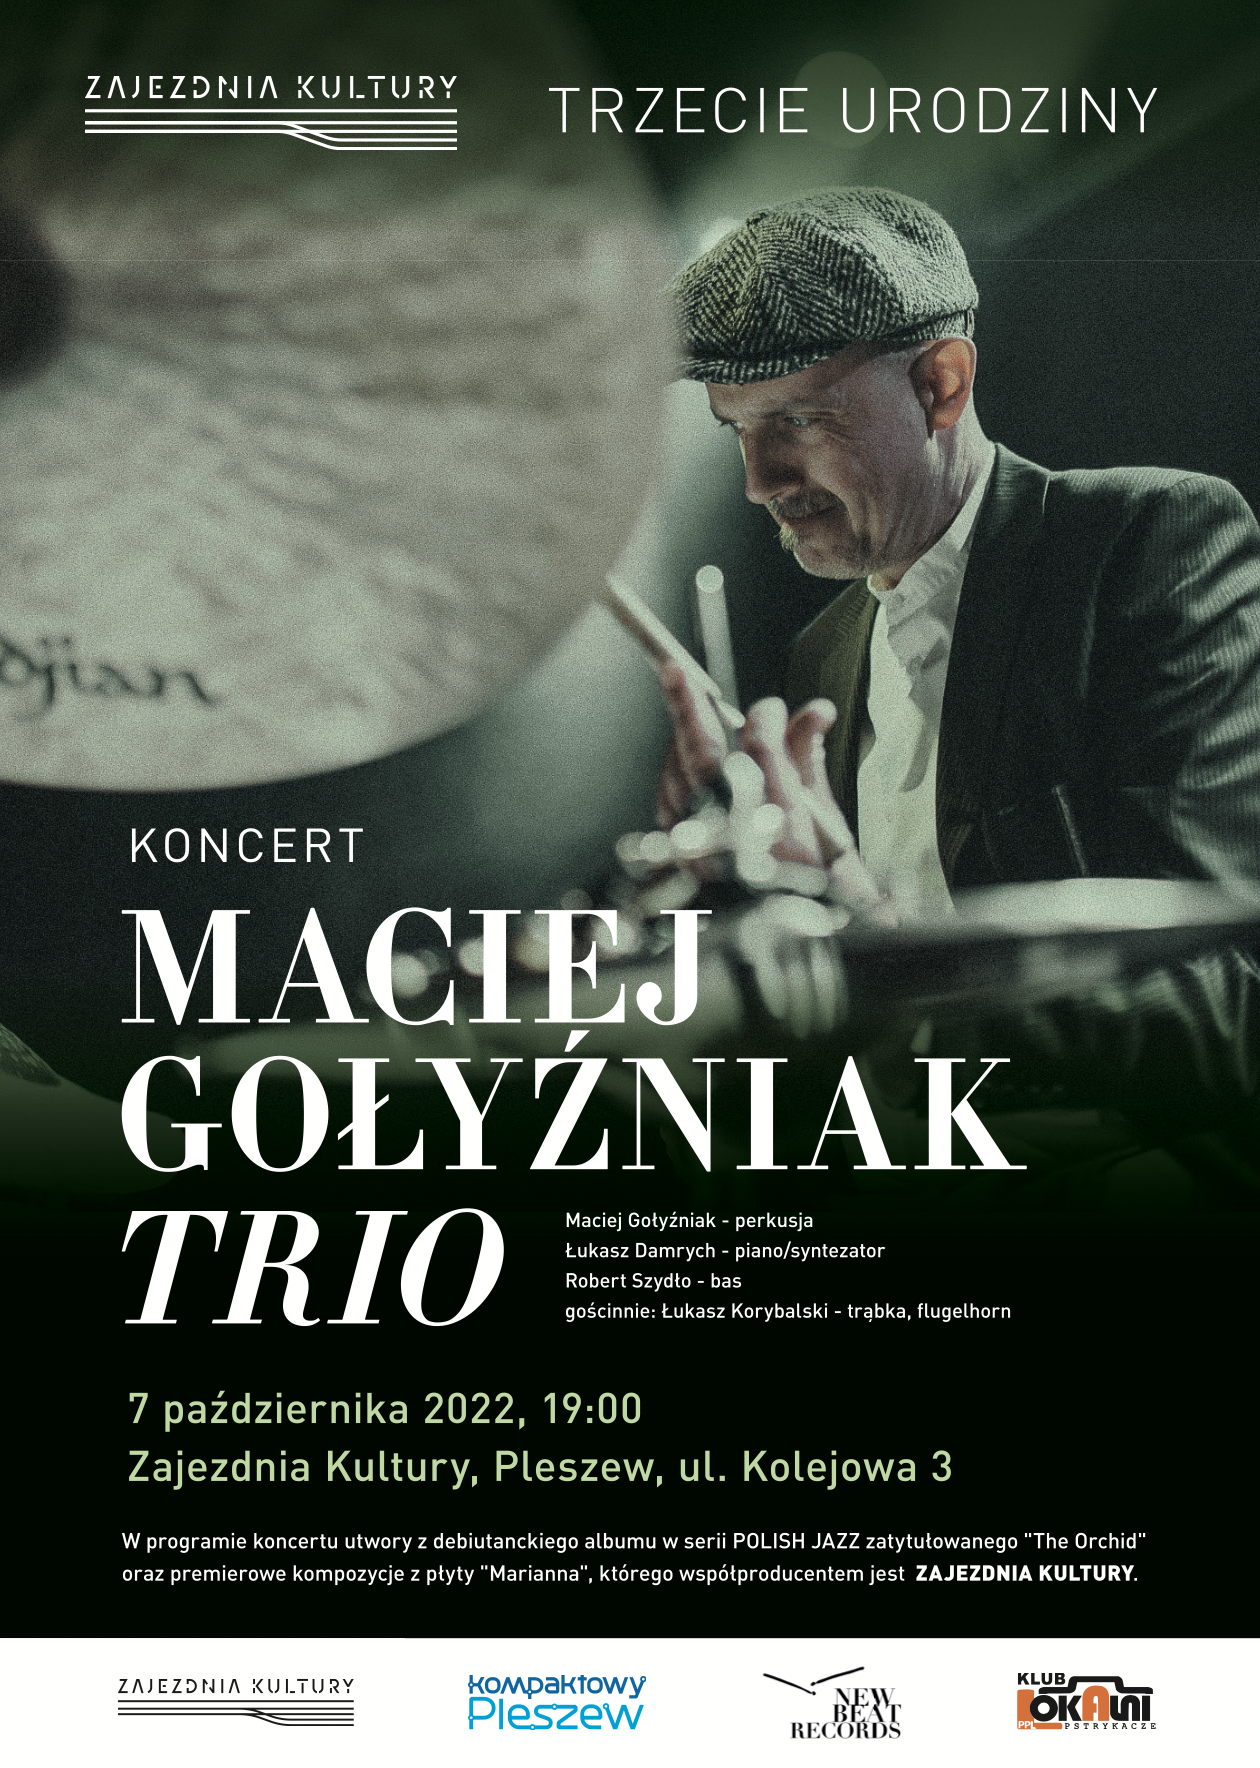 plakat koncertu z okazji trzecich urodzin Zajezdni Kultury w Pleszewie 7 października 2022